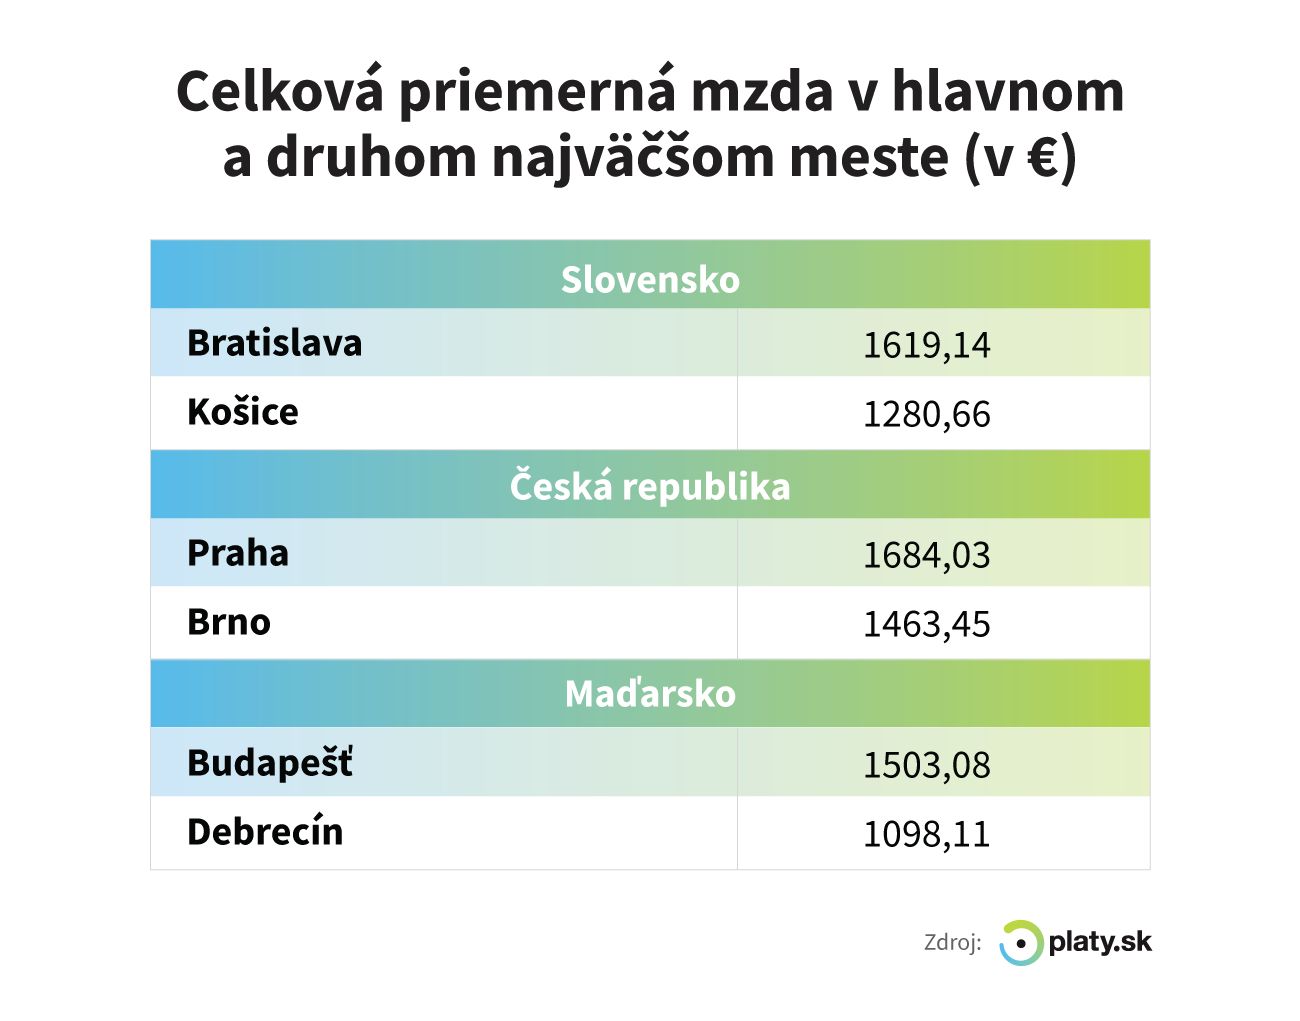 V Košiciach zarobíš o 350 € menej než v Bratislave. Medzi dvomi najväčšími mestami je veľký rozdiel